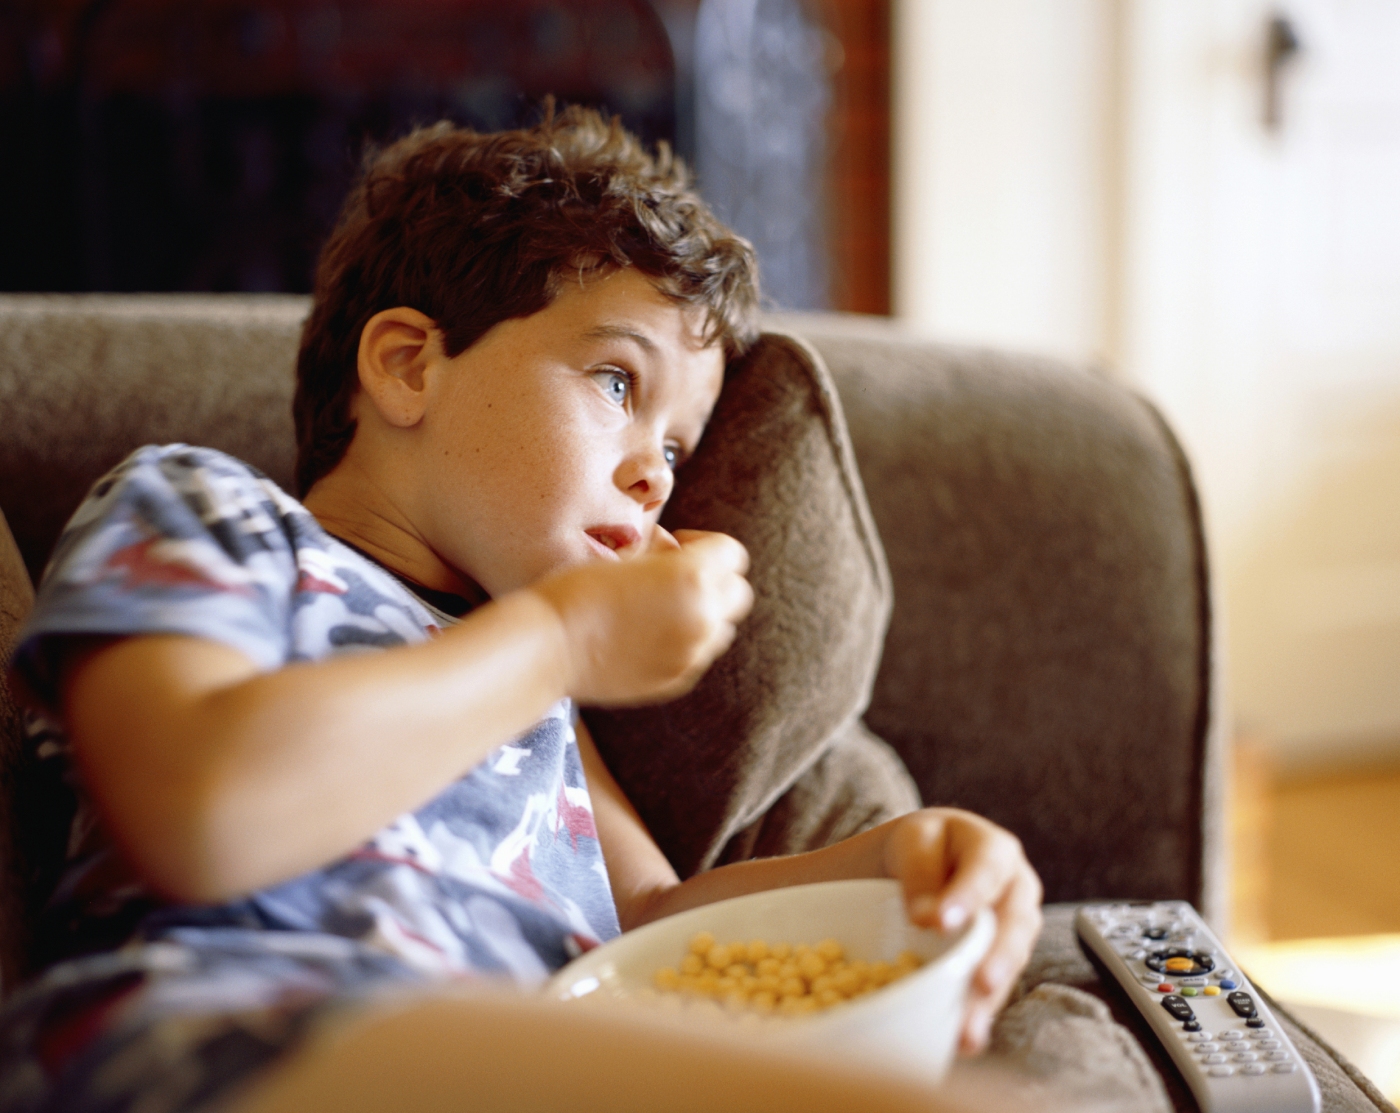 Les publicités auxquels sont confrontés adultes et enfants influencent significativement les comportements alimentaires et, hélas, pas dans le bon sens. © bttoro, Istock.com